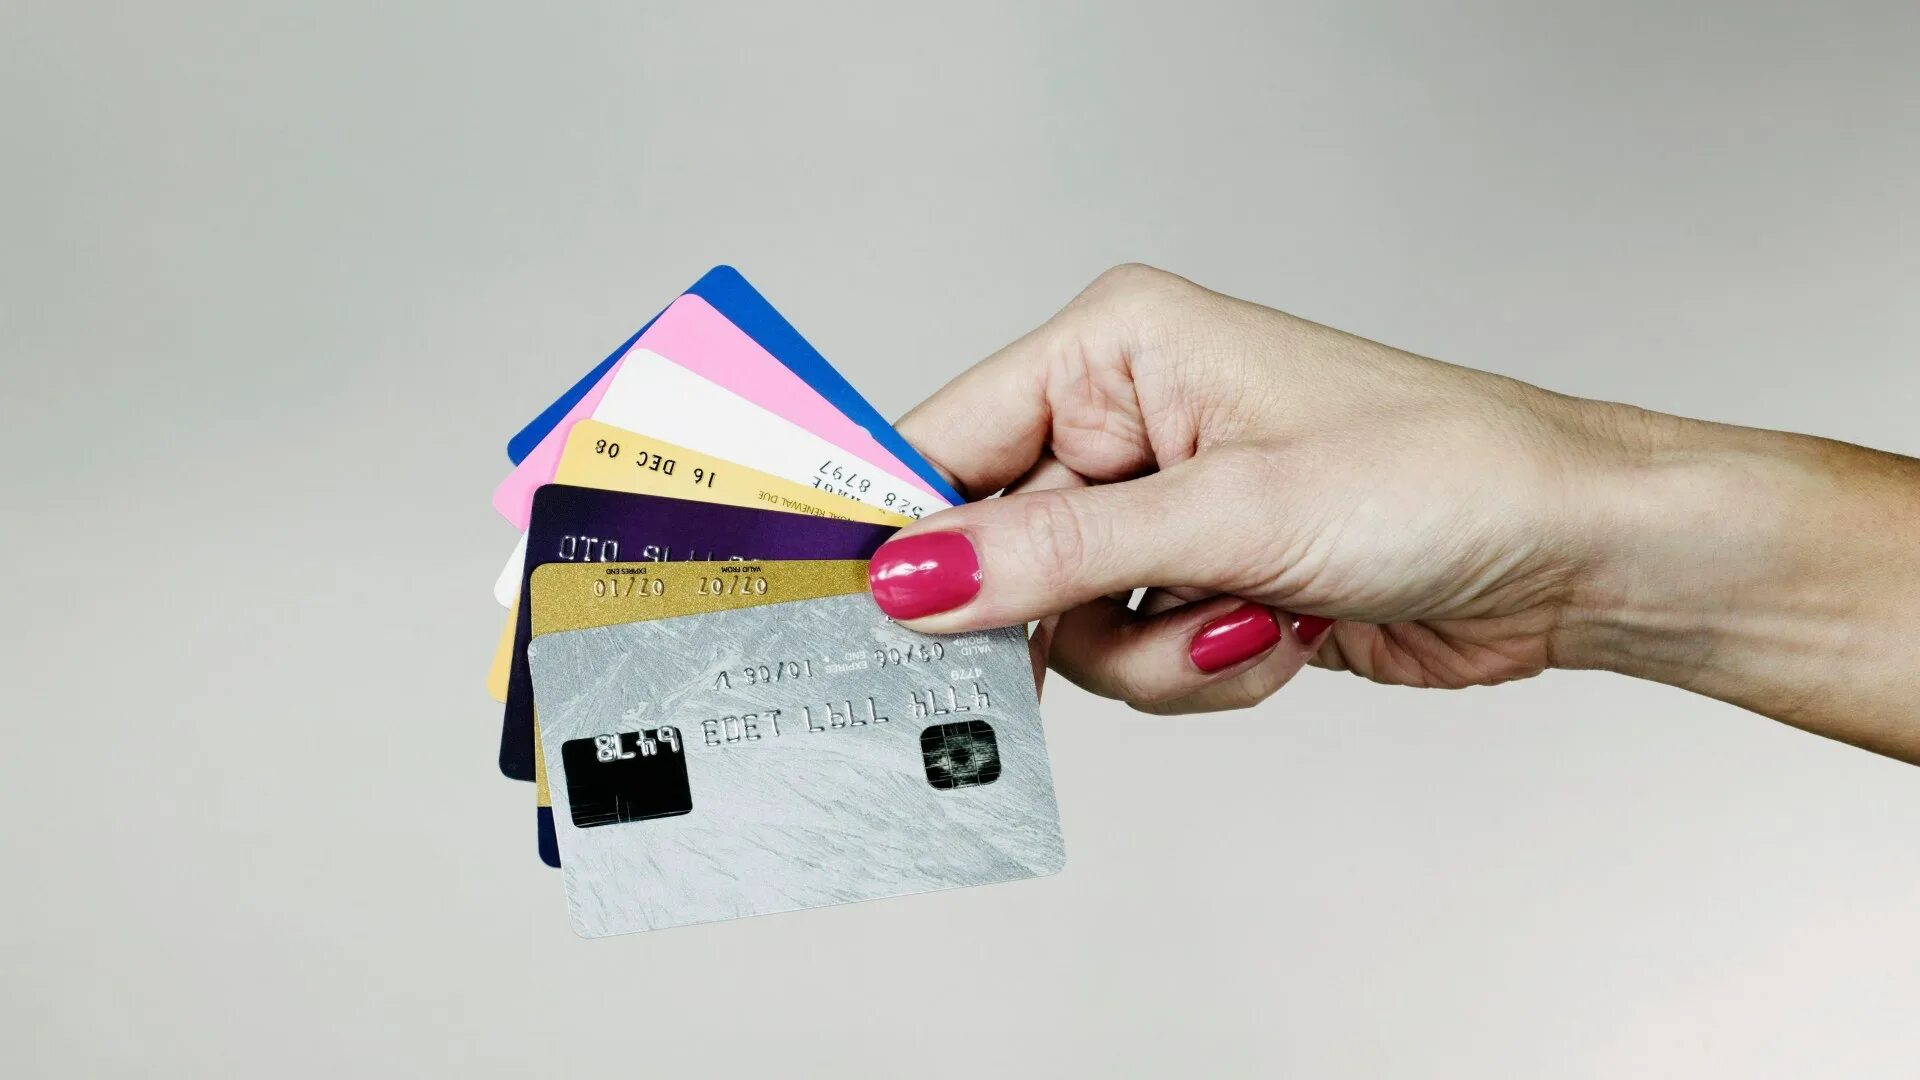 Две кредитки. Кредитная карта. Креативная банковская карта. Бумажные банковские карты. Красивые банковские карты.